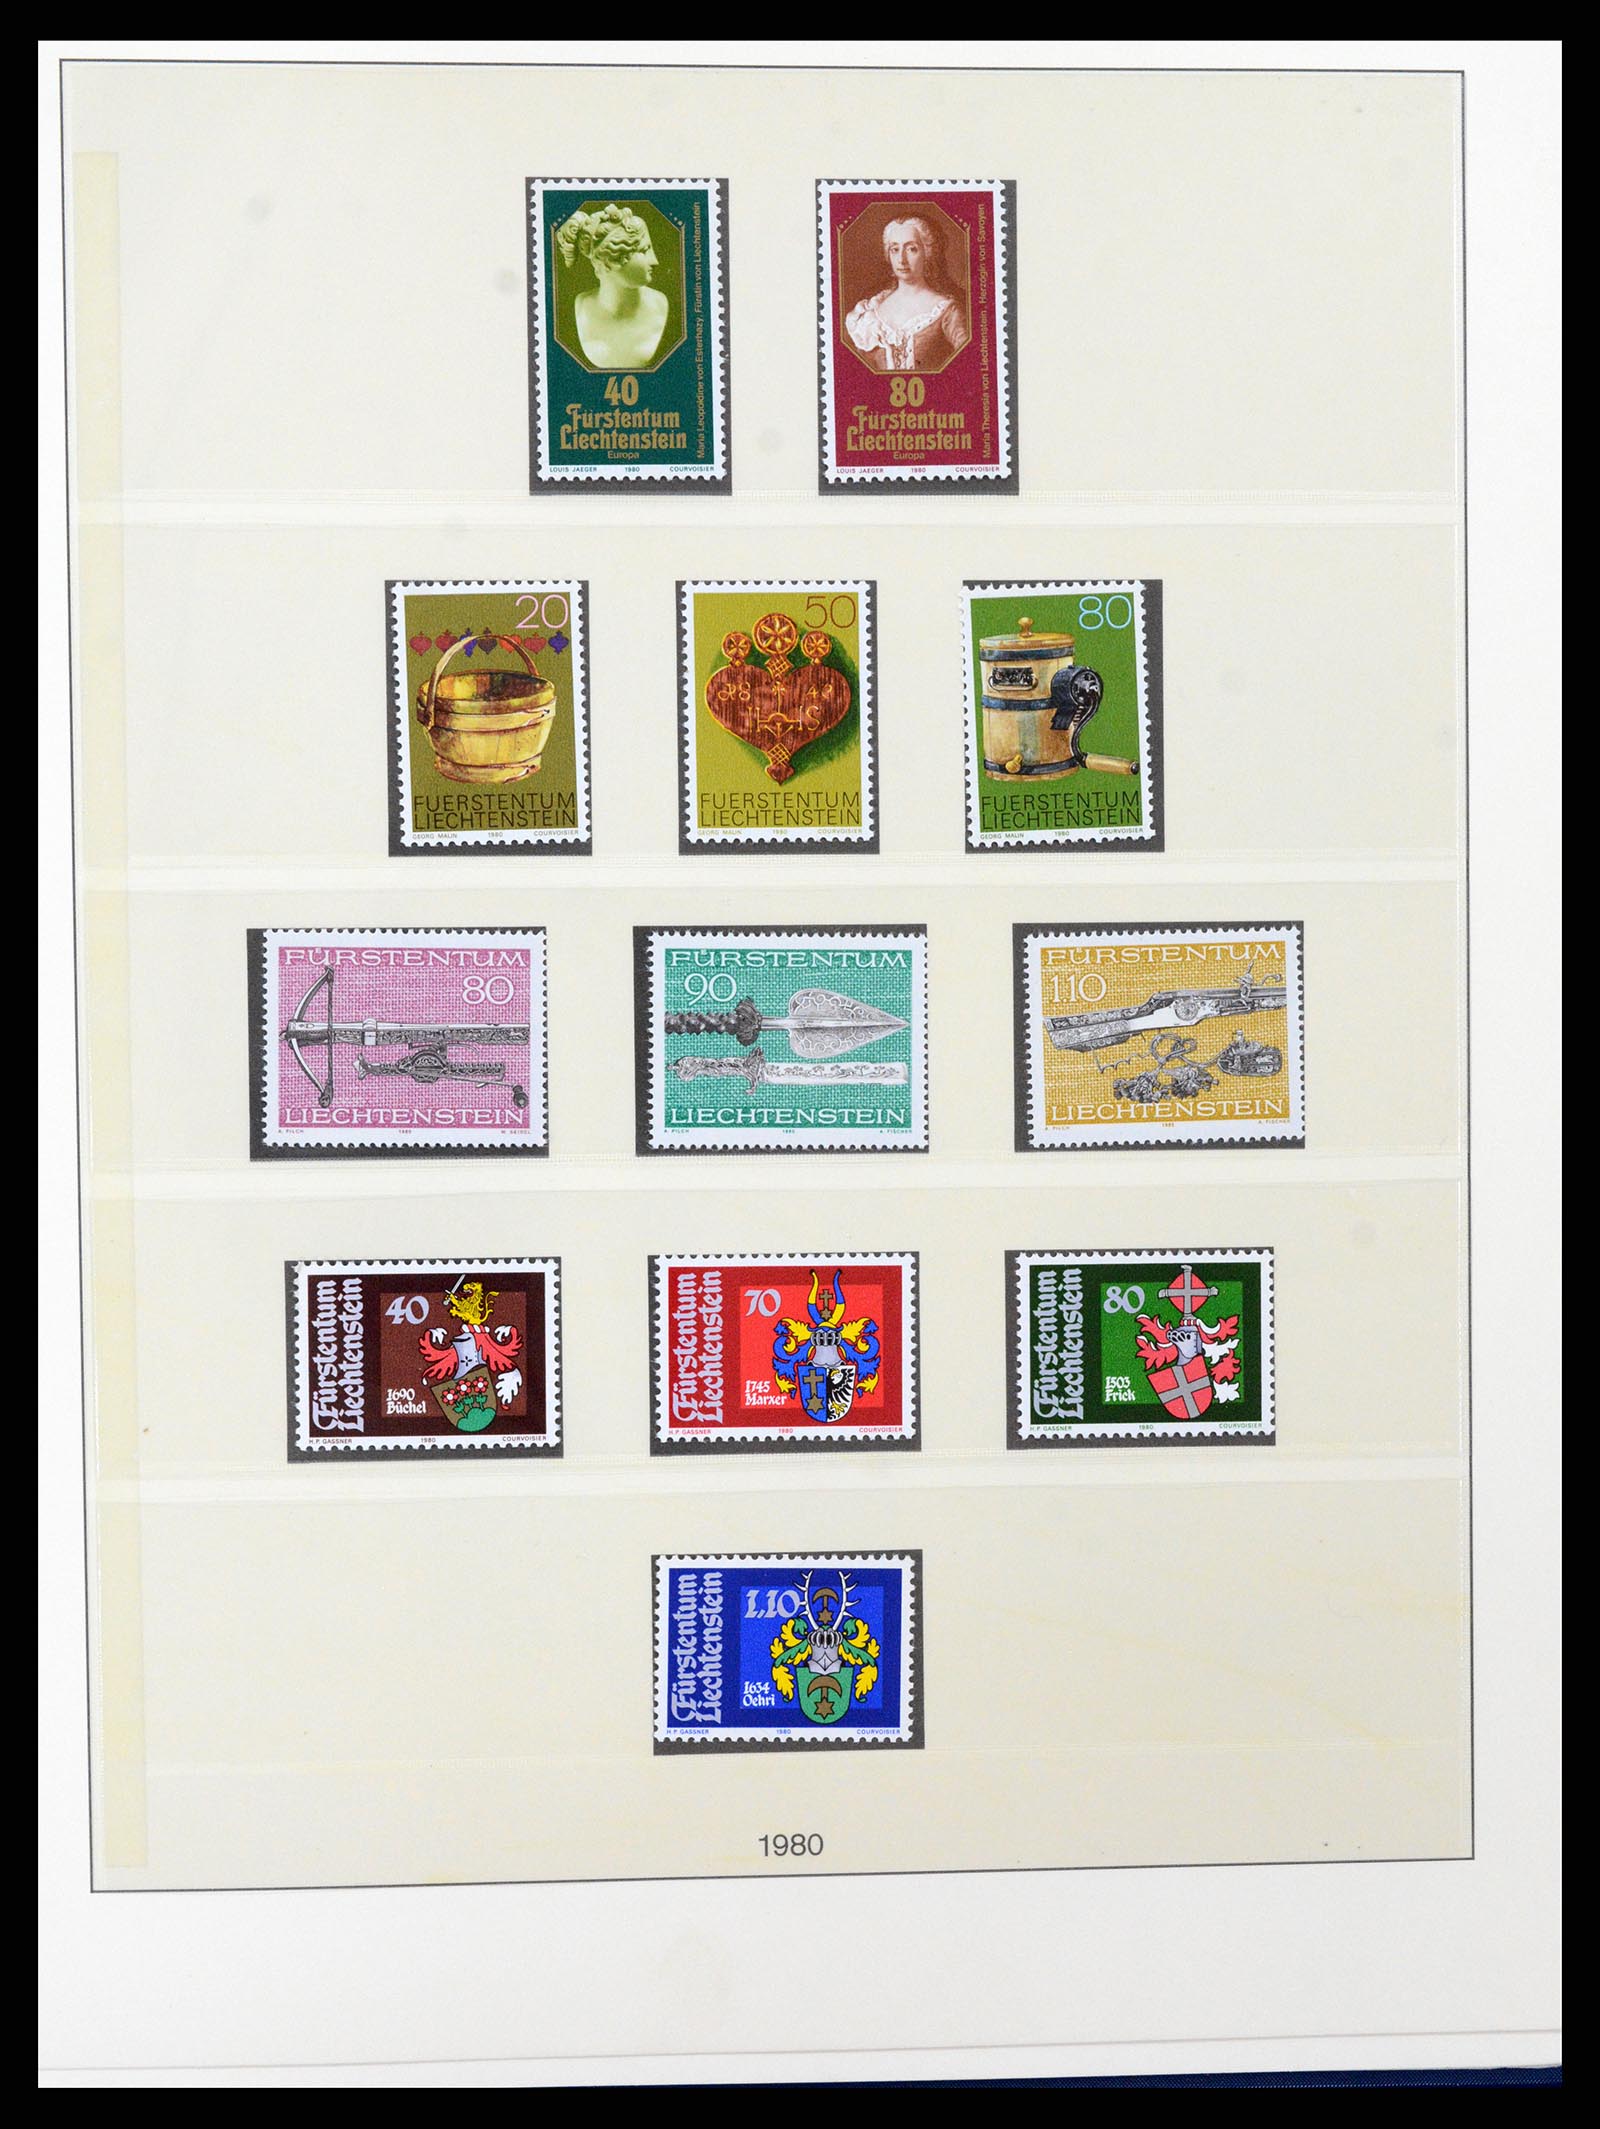 37295 074 - Stamp collection 37295 Liechtenstein 1912-2009.